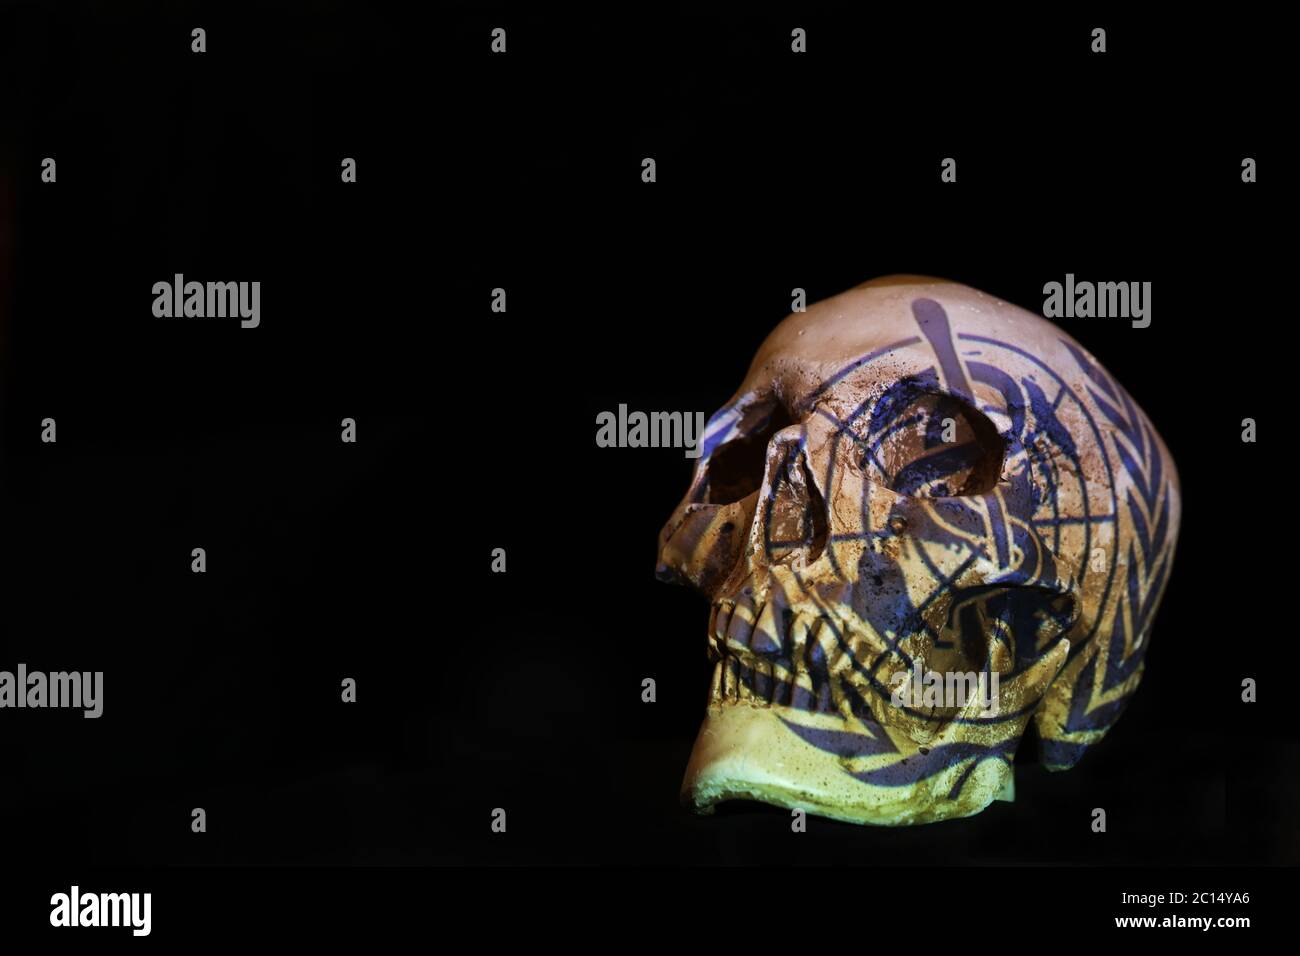 Un crâne isolé et un fond noir Uni avec le logo de l'Organisation mondiale de la Santé QUI a projeté dessus. Virus Corona covid-19 concept Banque D'Images